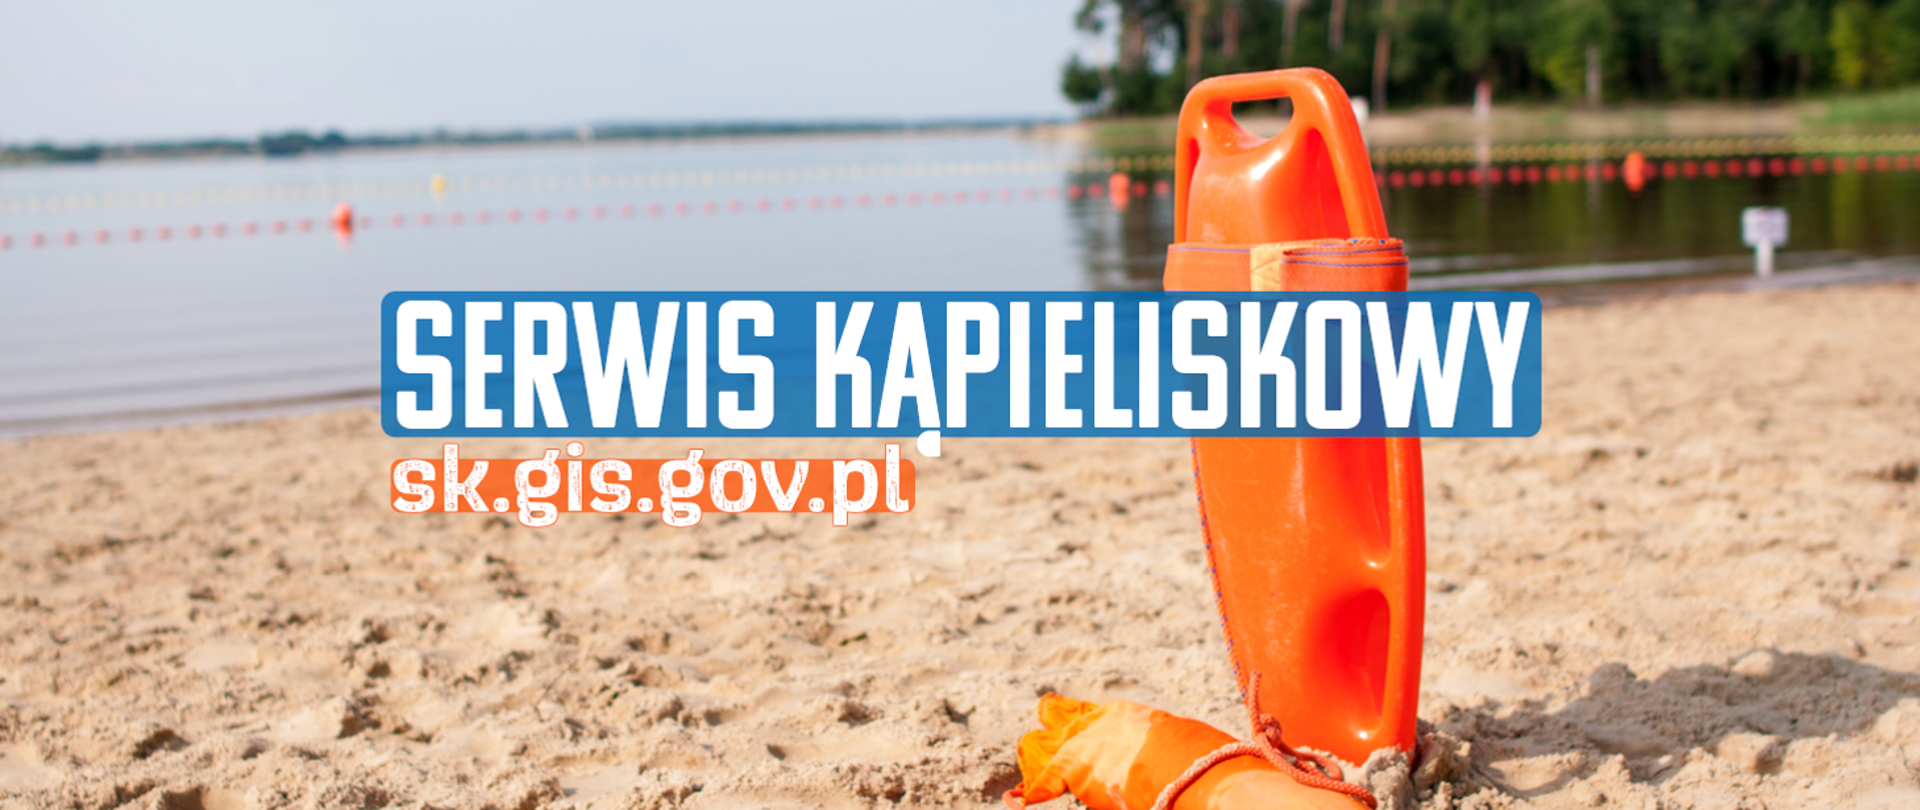 Biały napis z niebieską poświatą: "Serwis kąpieliskowy" oraz biały napis z pomarańczową poświatą: "sk.gis.gov.pl". W tle widok jeziora, plaży oraz pomarańczowej bojki pływającej. 